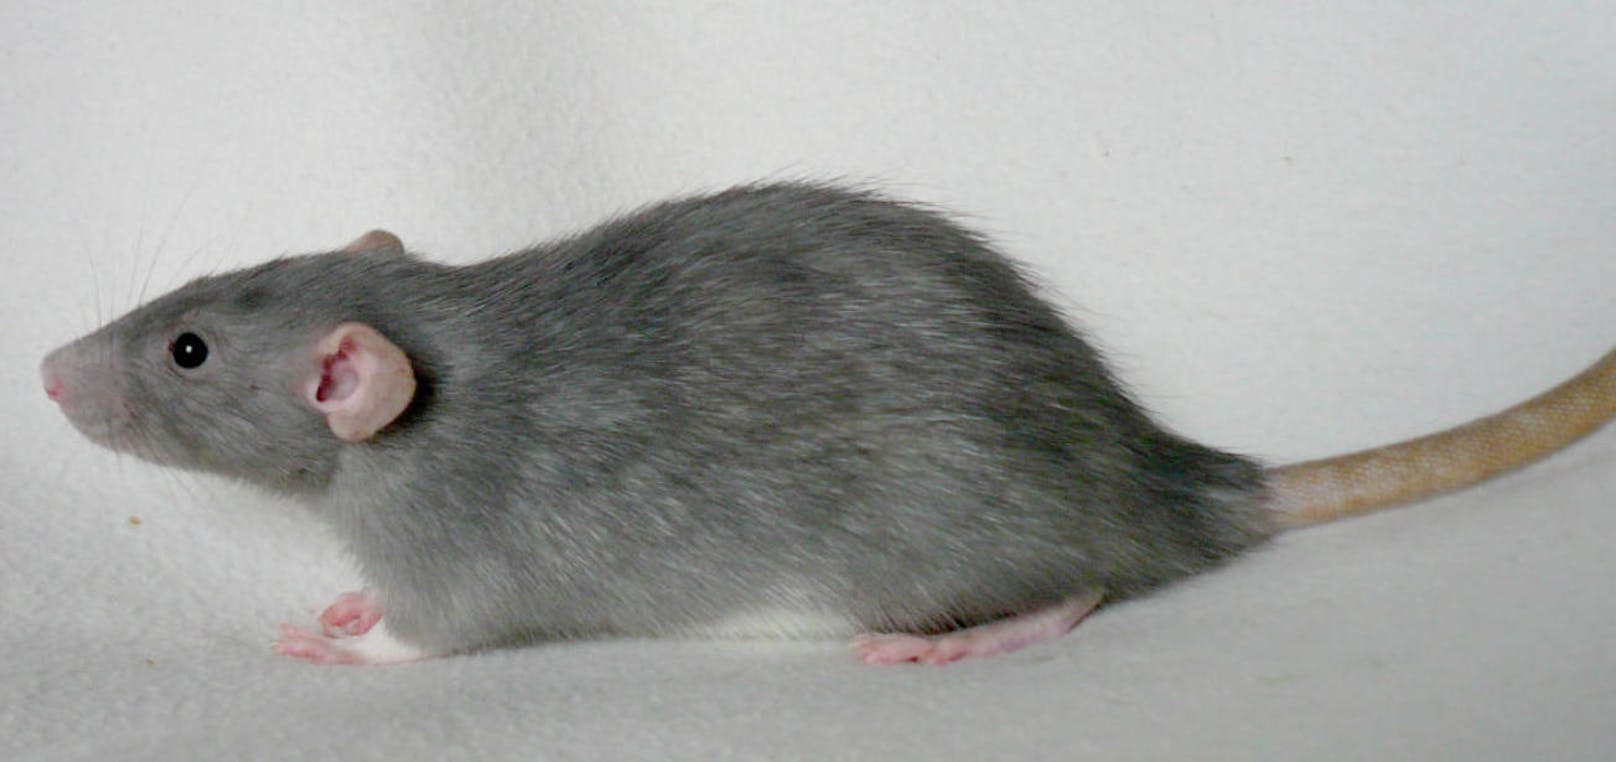 <b>Ratte</b>
Da eine Ratte meldepflichtige Krankheiten übertragen kann, muss sie getötet werden. Entweder durch eine Fachfirma oder indem man selber Fallen aufstellt. Bei der Entsorgung gilt dasselbe wie bei Mäusen.